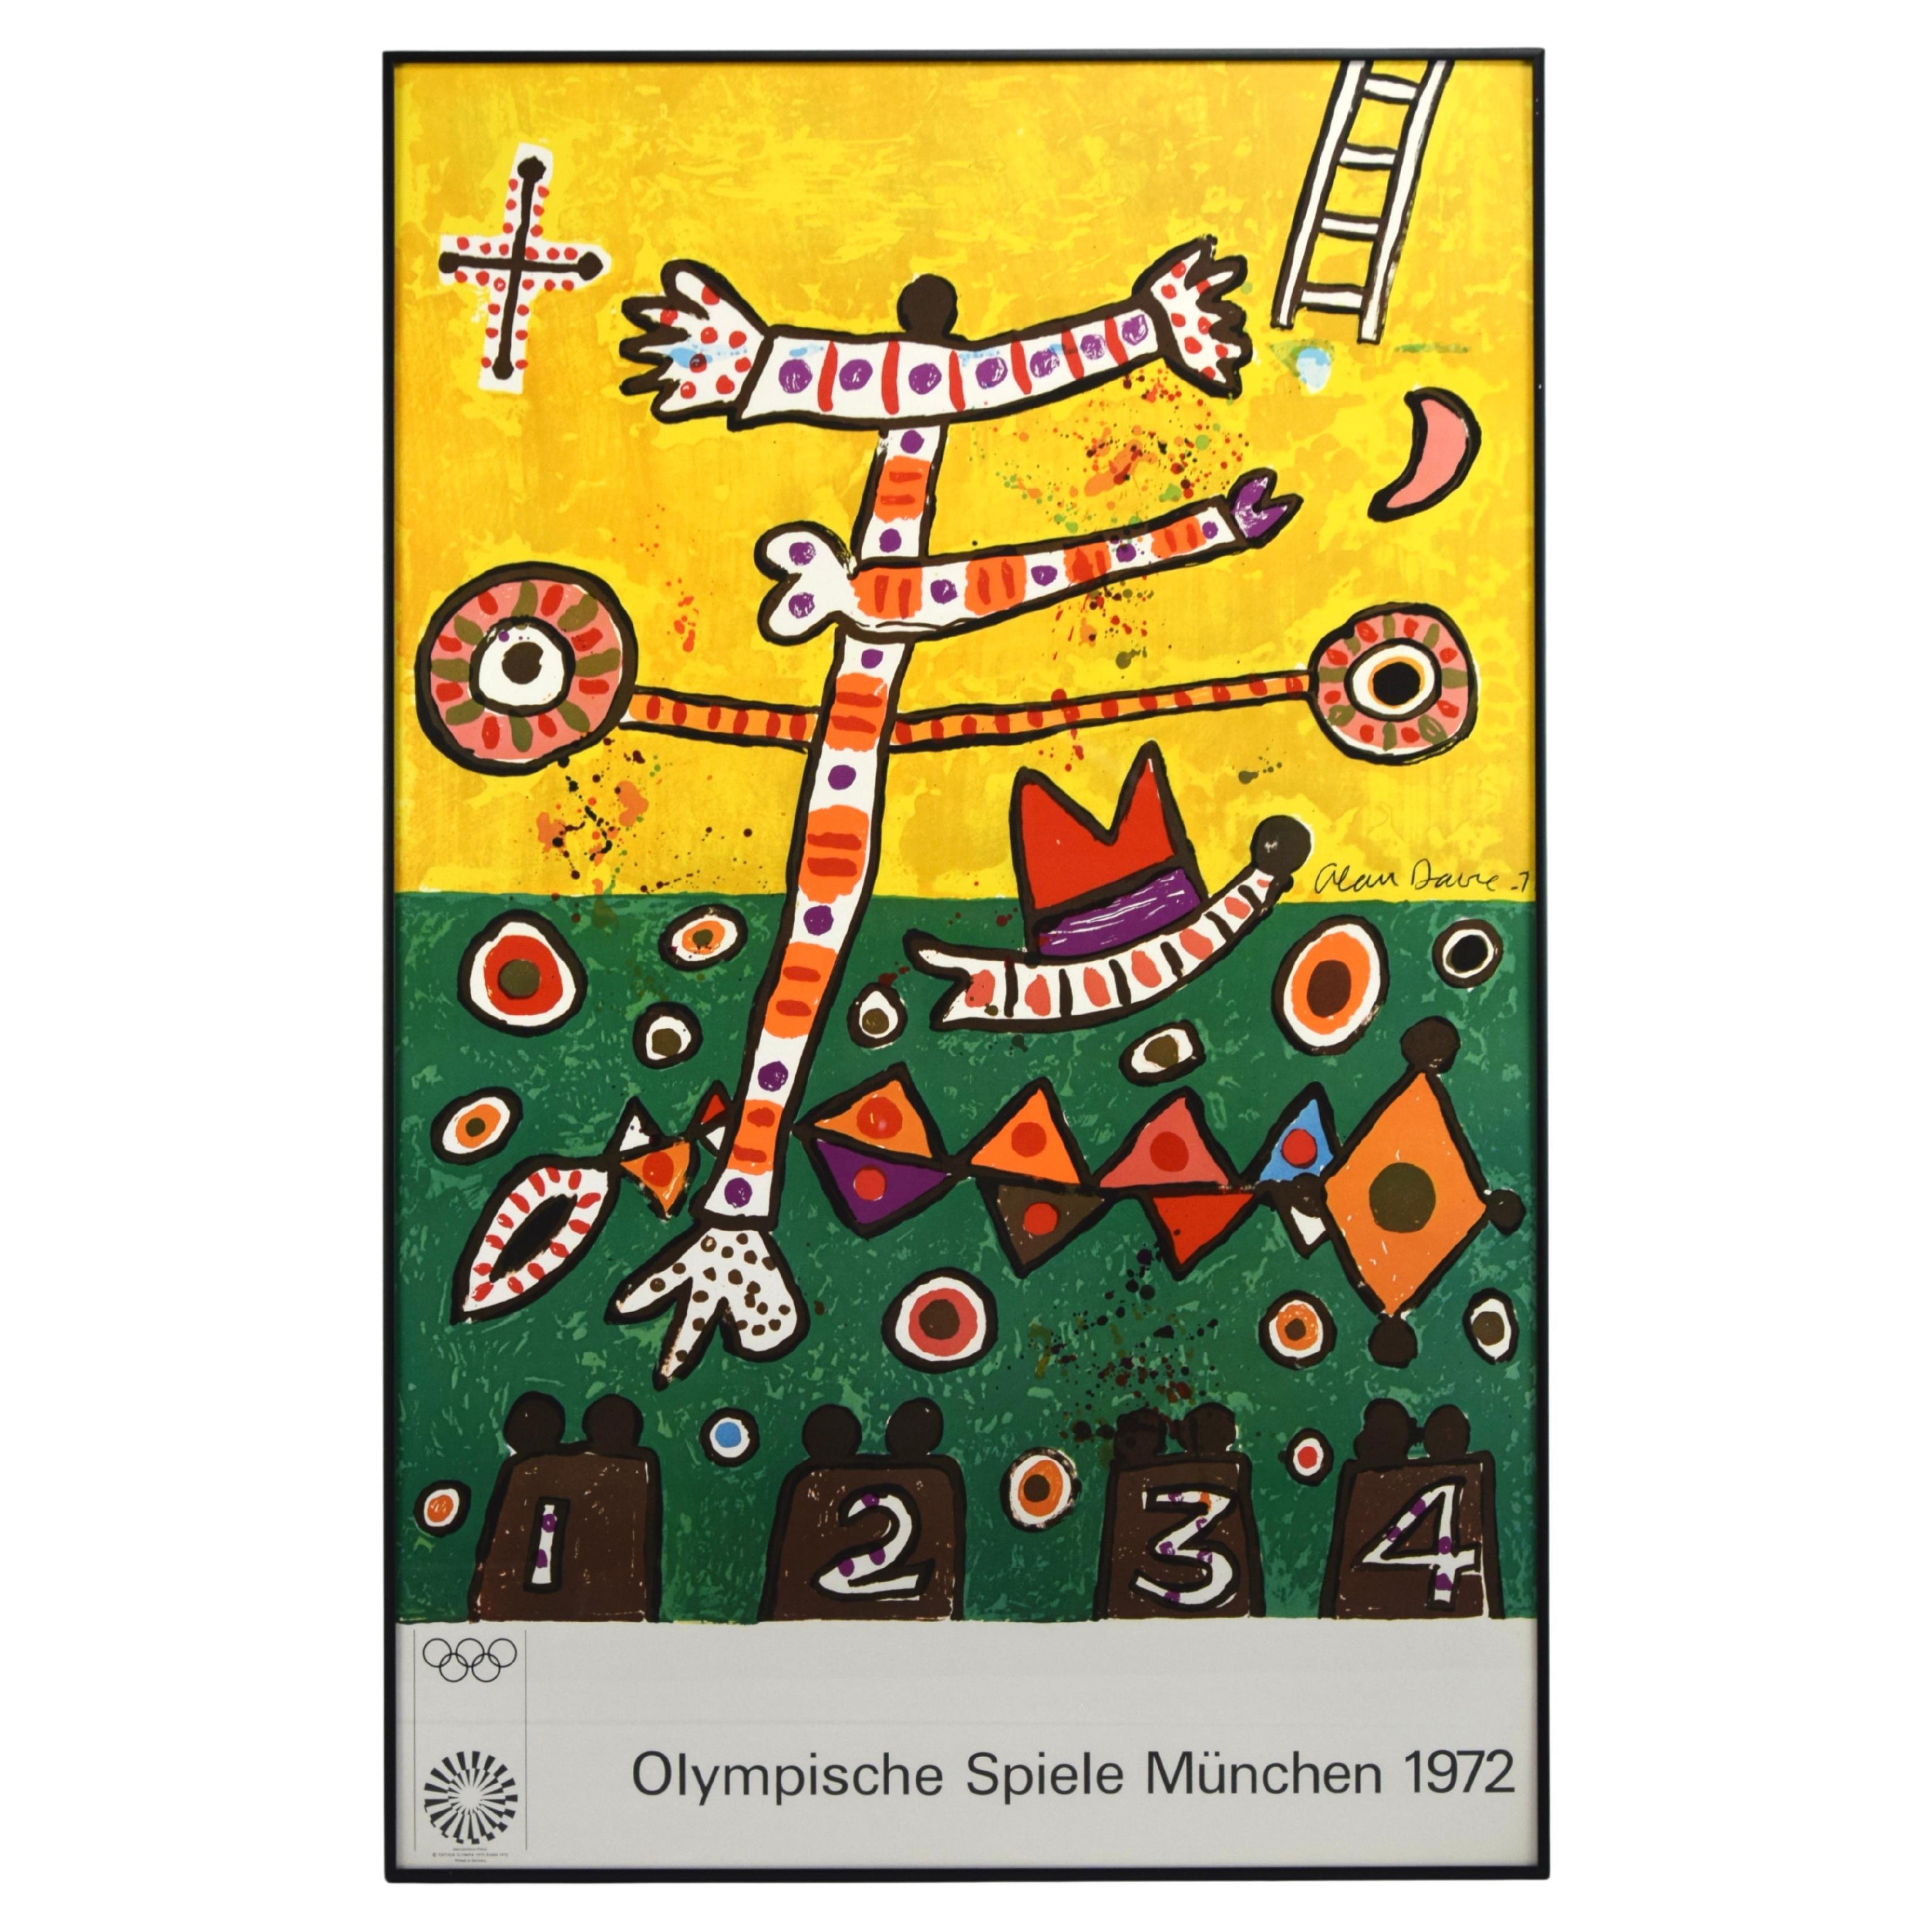 Affiche olympique de Munich de 1972 d'Alan Davie